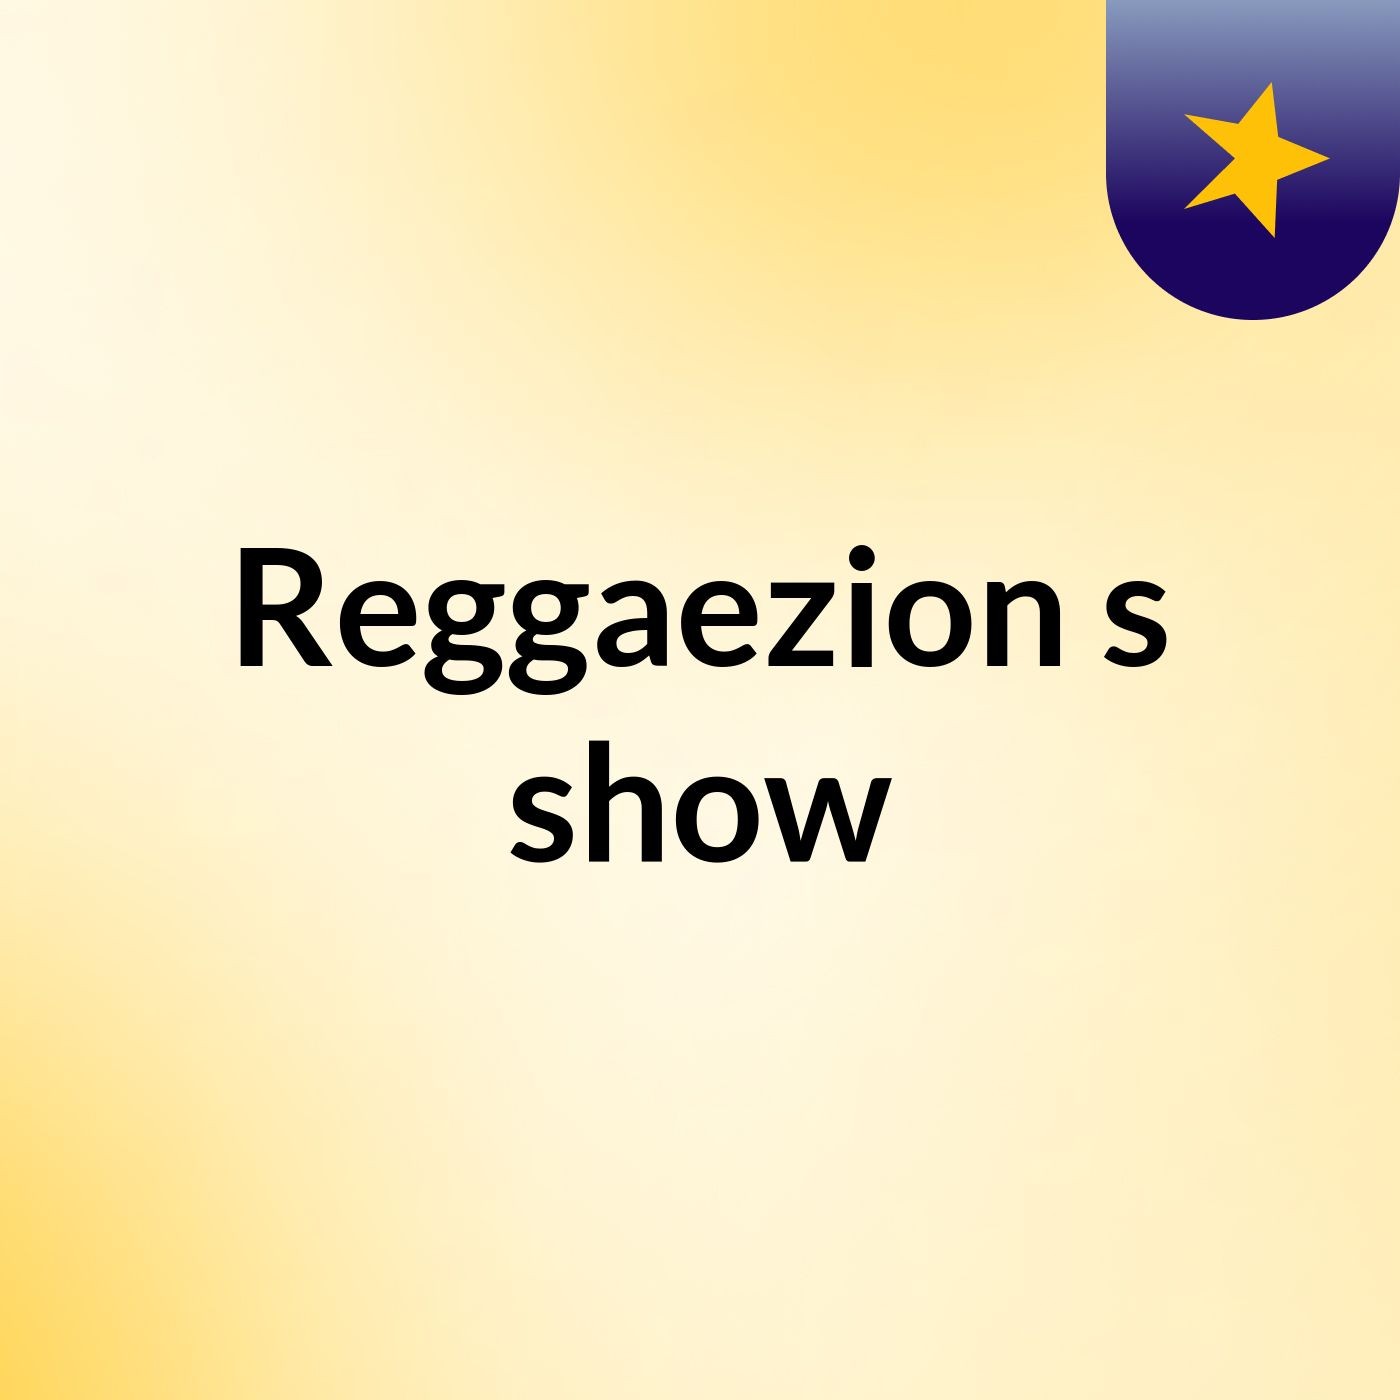 Reggaezion's show